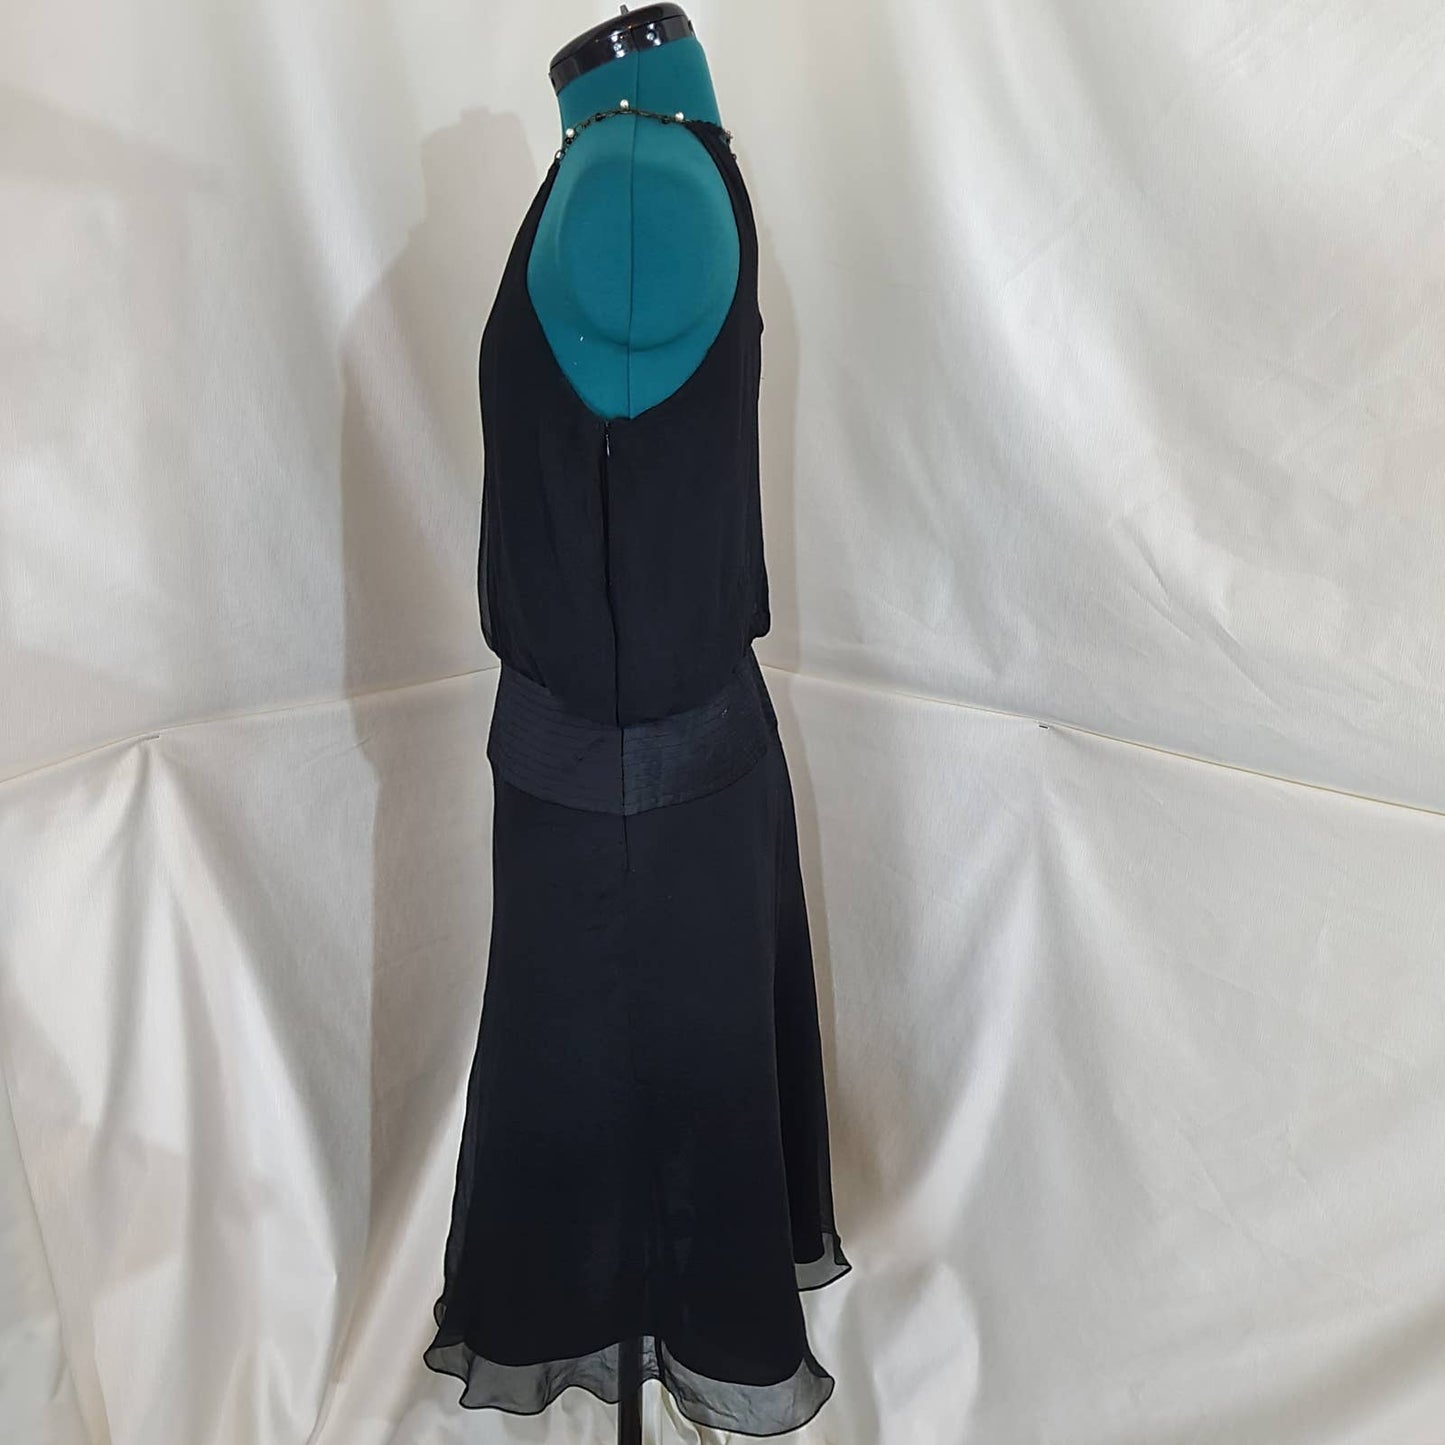 Laundry by Shelli Segal Black Silk Chiffon Dress with Drop Waist - Size 10Markita's ClosetLaundry by Shelli Segal